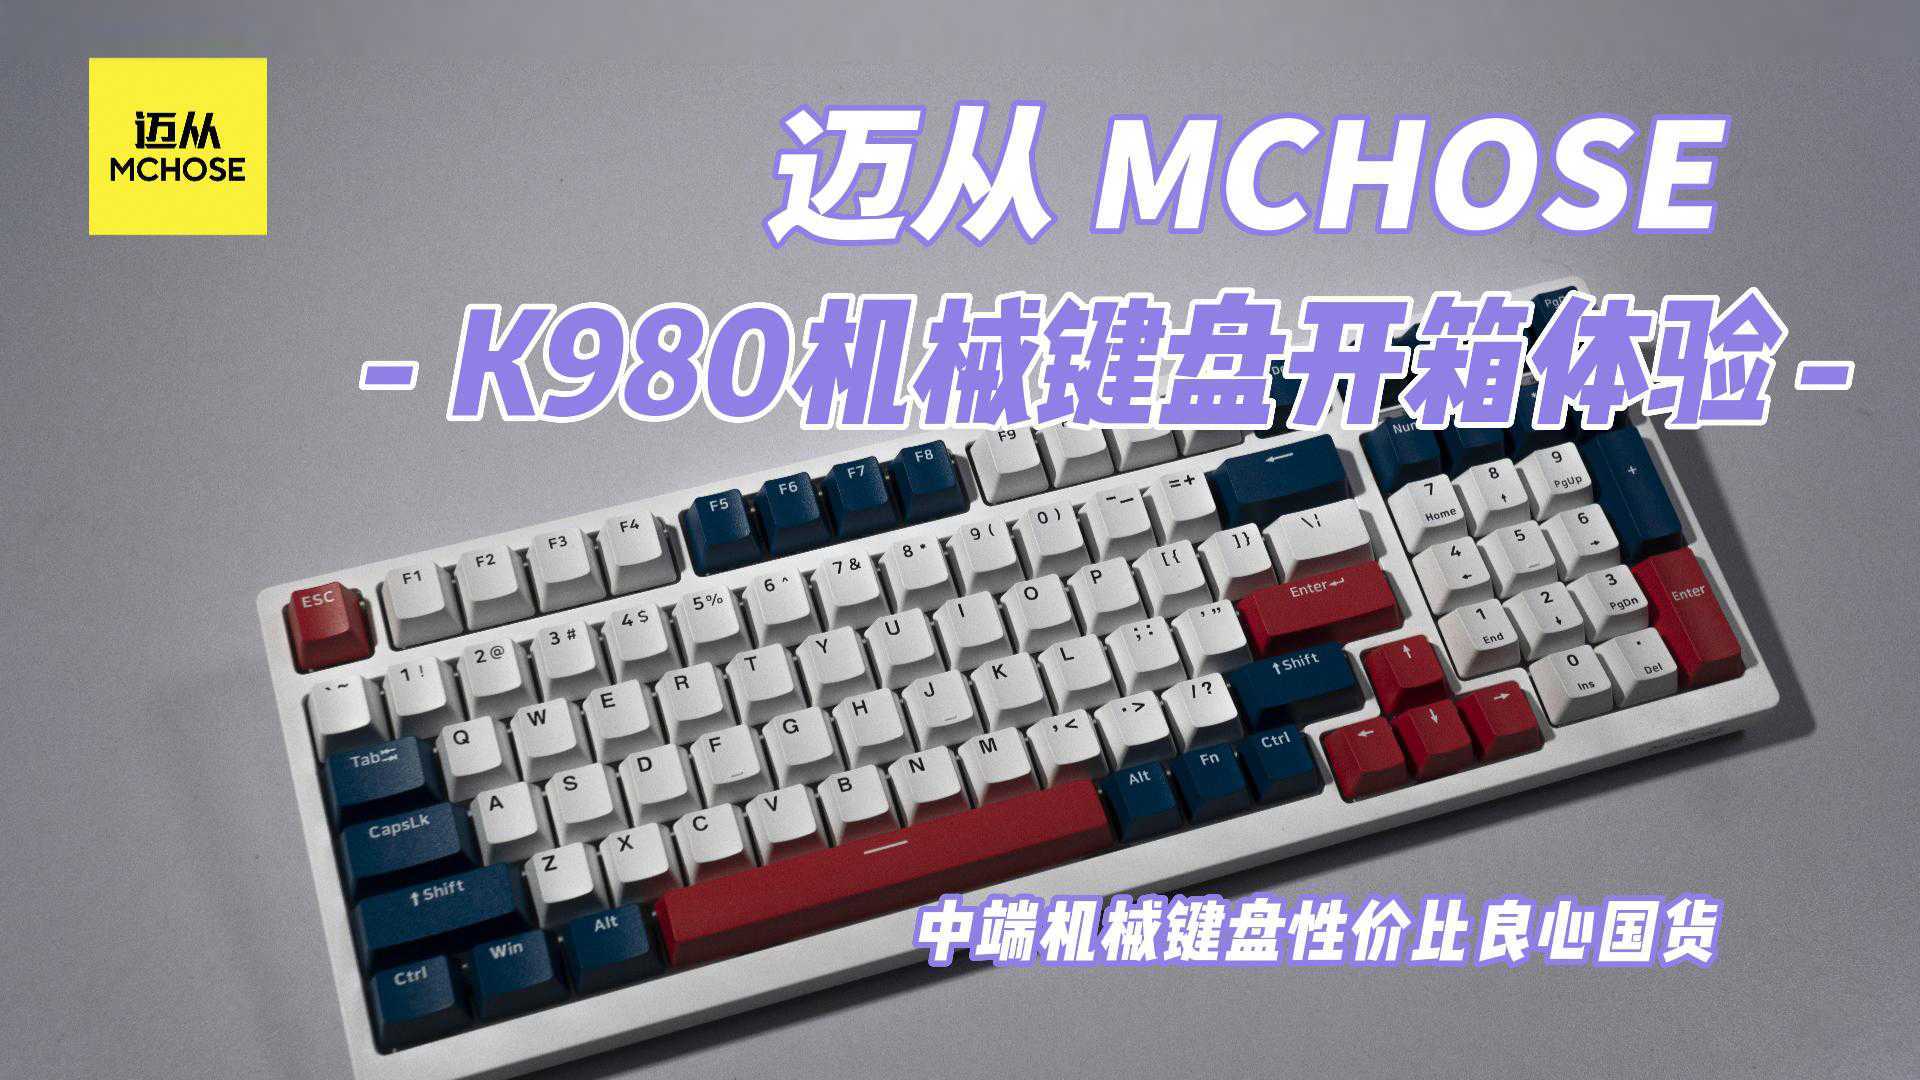 中端机械键盘性价比良心国货，MCHOSE迈从 K980机械键盘开箱体验